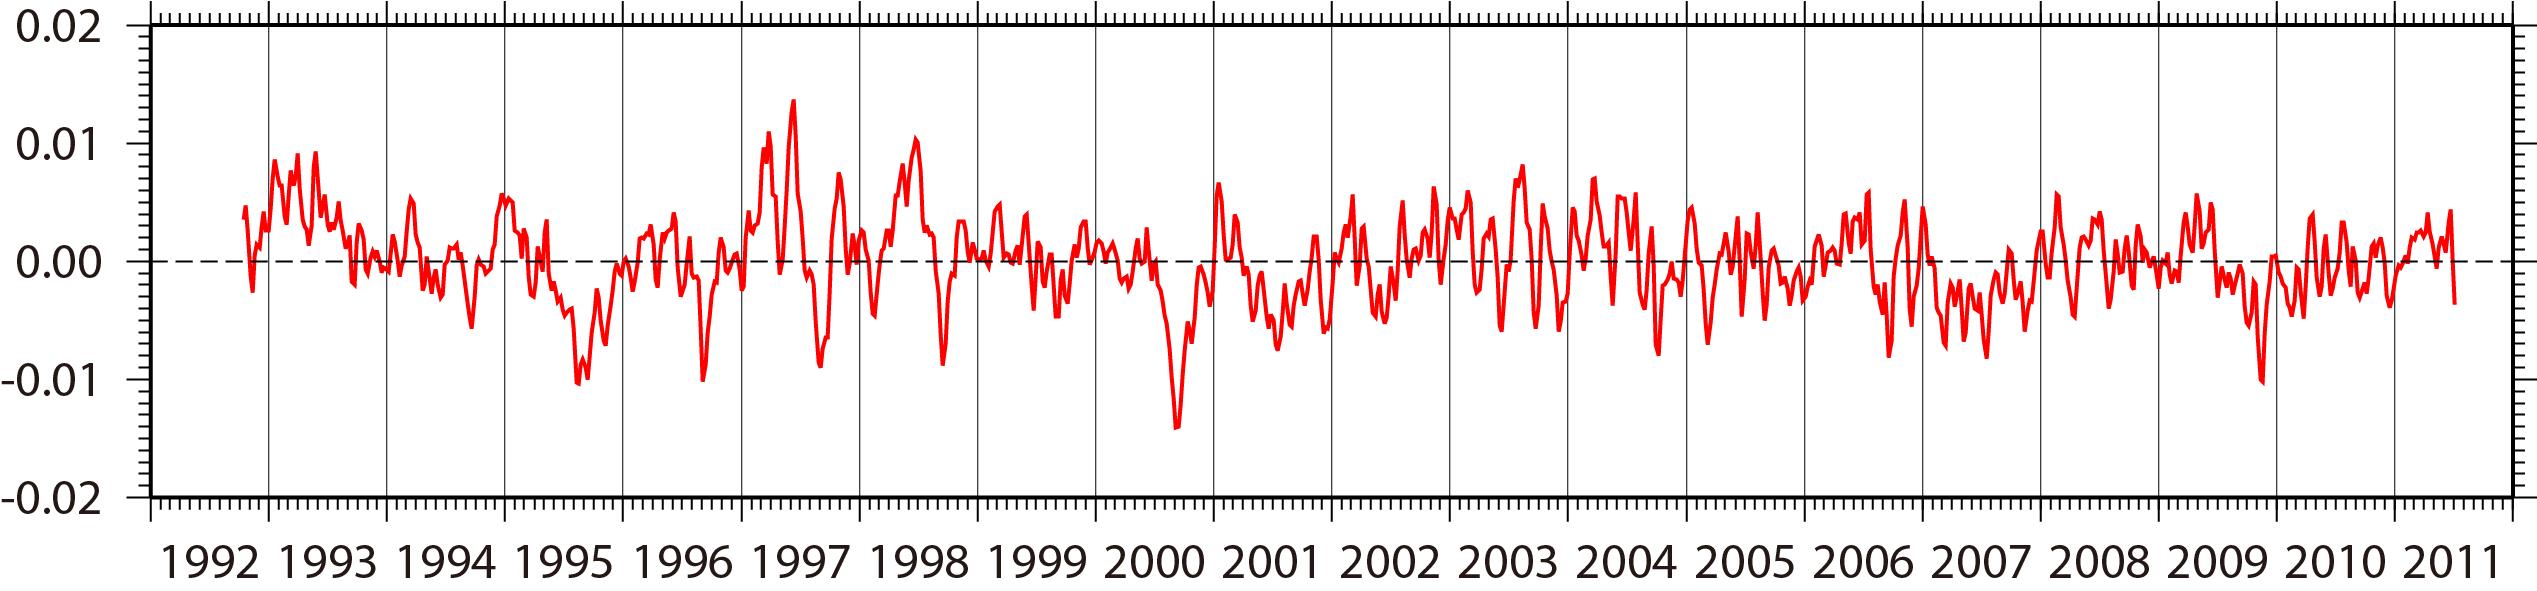 1992년 10월부터 2011년 6월까지 20년 동안 드레이크해협 단면 A를 통과하는 표층 (수심 1m) 수송량 편차의 1주일 간격의 시계열.